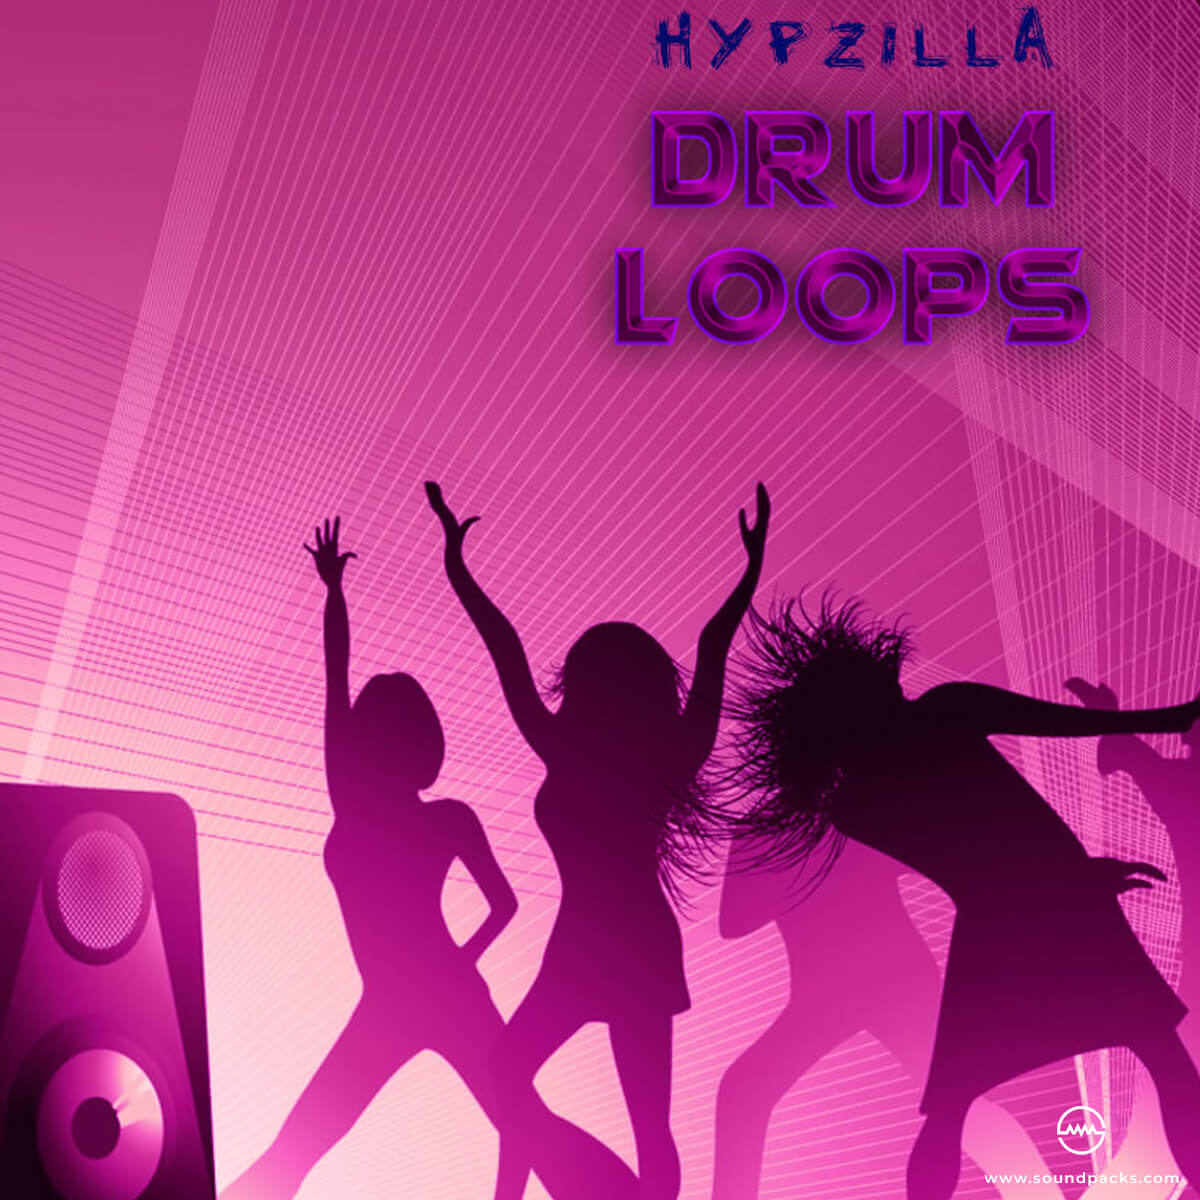 Hypzilla Drum Loops